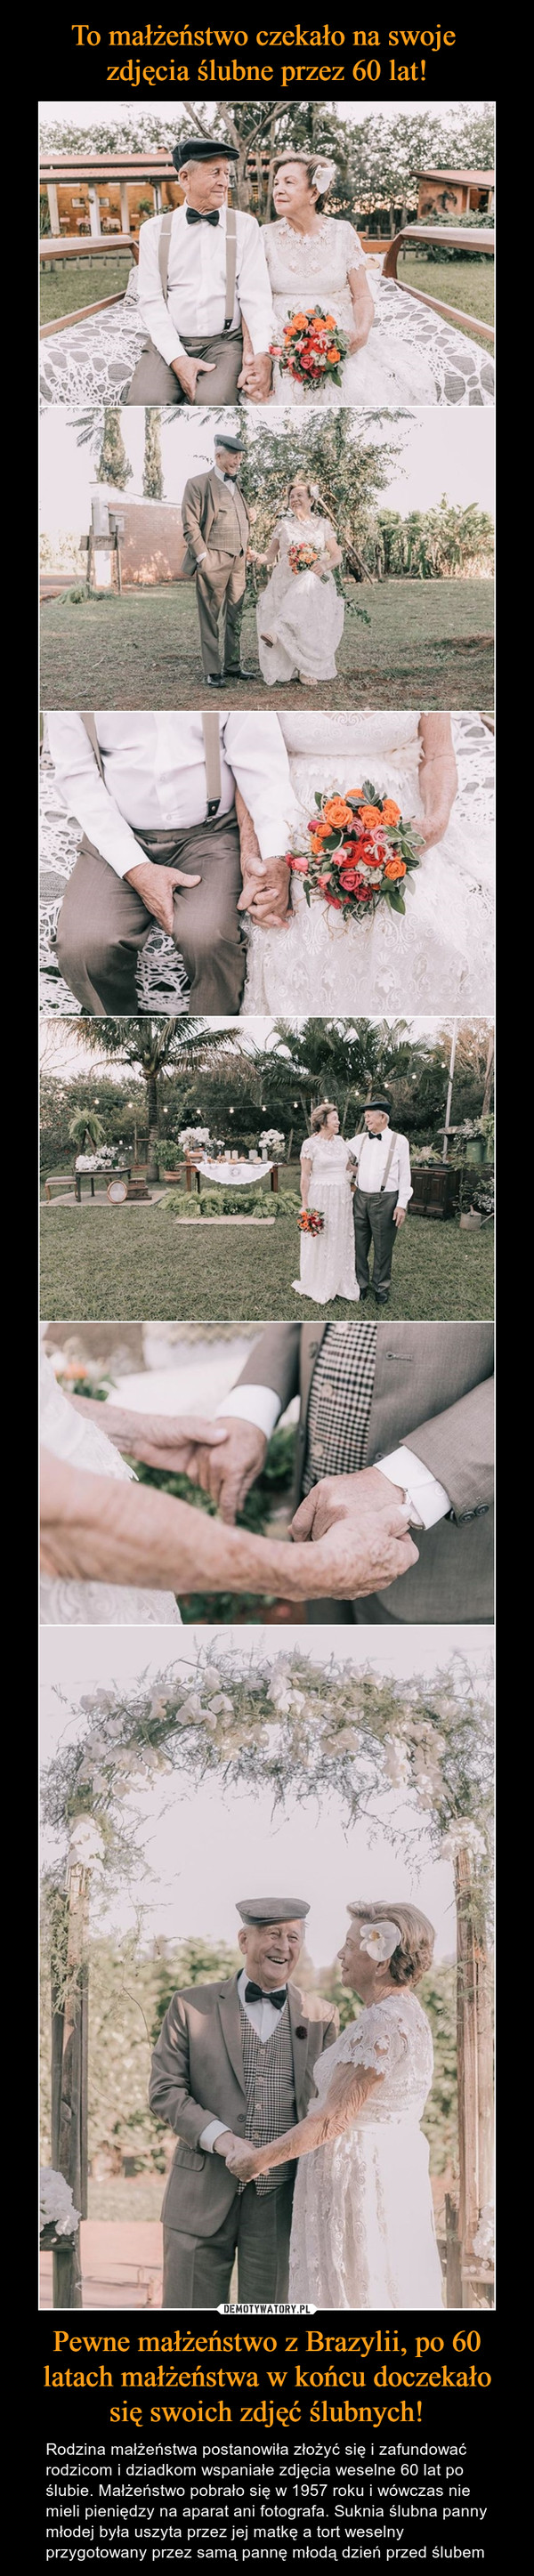 Pewne małżeństwo z Brazylii, po 60 latach małżeństwa w końcu doczekało się swoich zdjęć ślubnych! – Rodzina małżeństwa postanowiła złożyć się i zafundować rodzicom i dziadkom wspaniałe zdjęcia weselne 60 lat po ślubie. Małżeństwo pobrało się w 1957 roku i wówczas nie mieli pieniędzy na aparat ani fotografa. Suknia ślubna panny młodej była uszyta przez jej matkę a tort weselny przygotowany przez samą pannę młodą dzień przed ślubem 